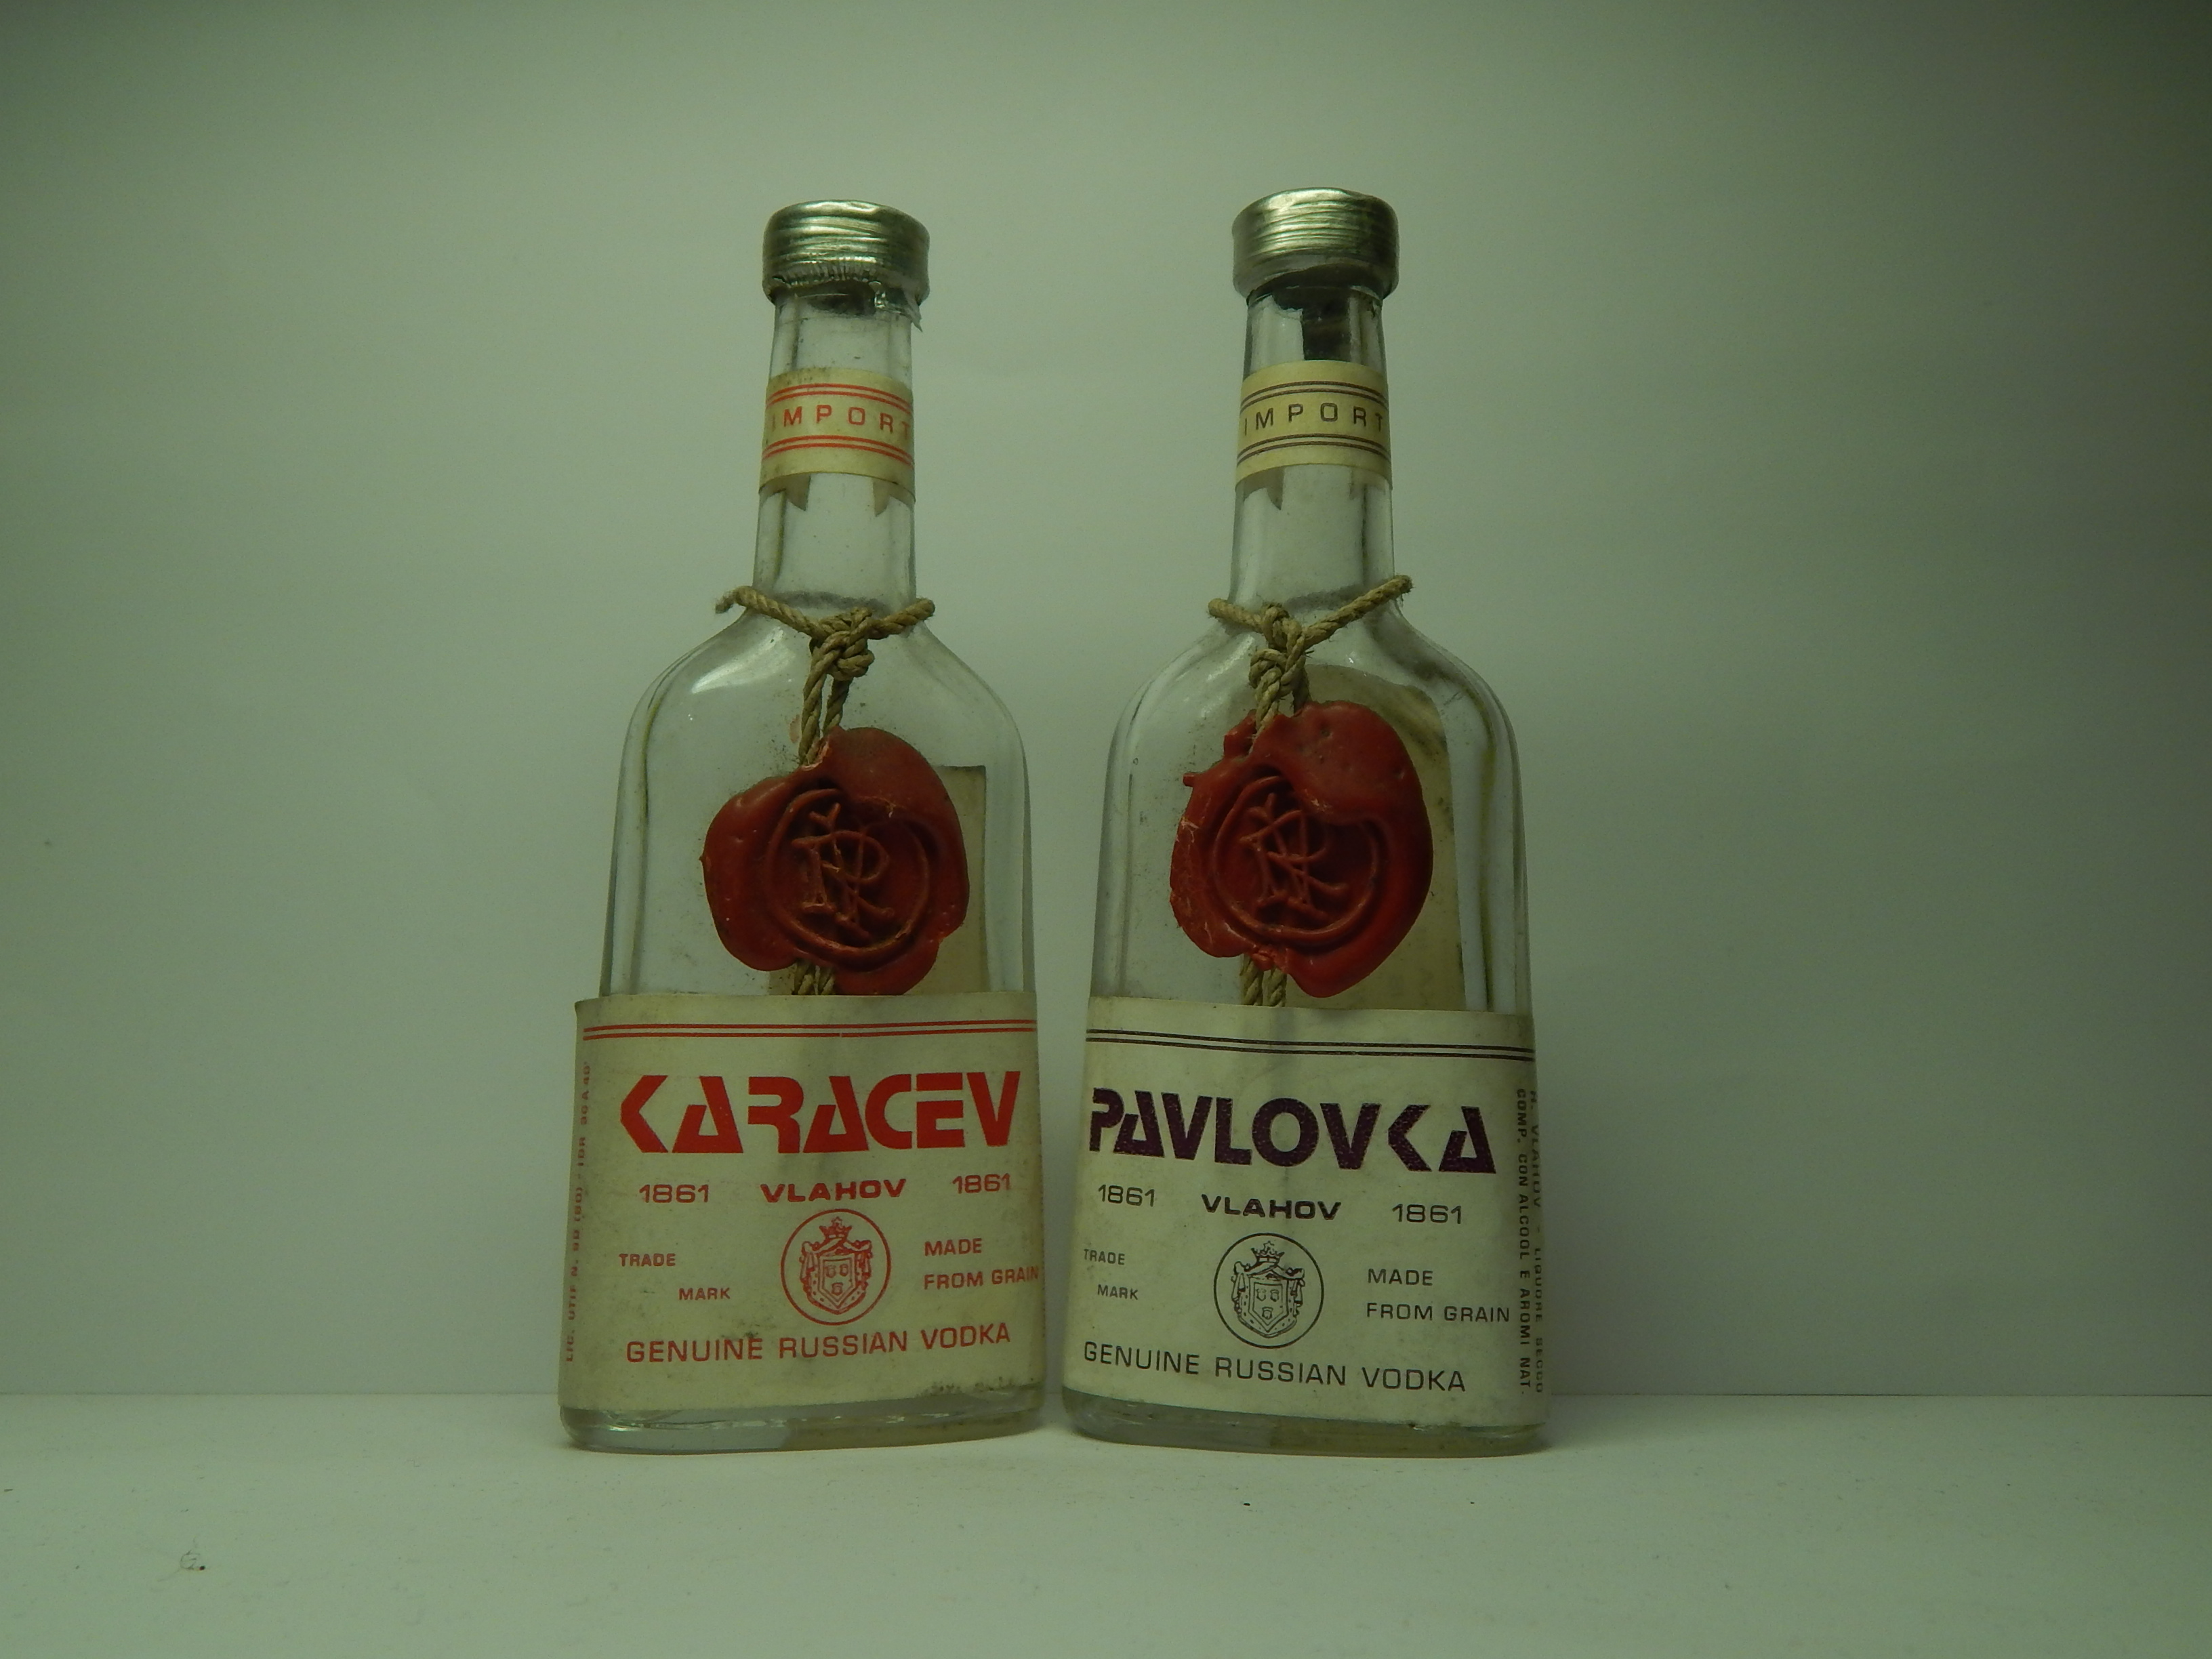 13.KARACEV + PAVLOVKA Russian Vodka